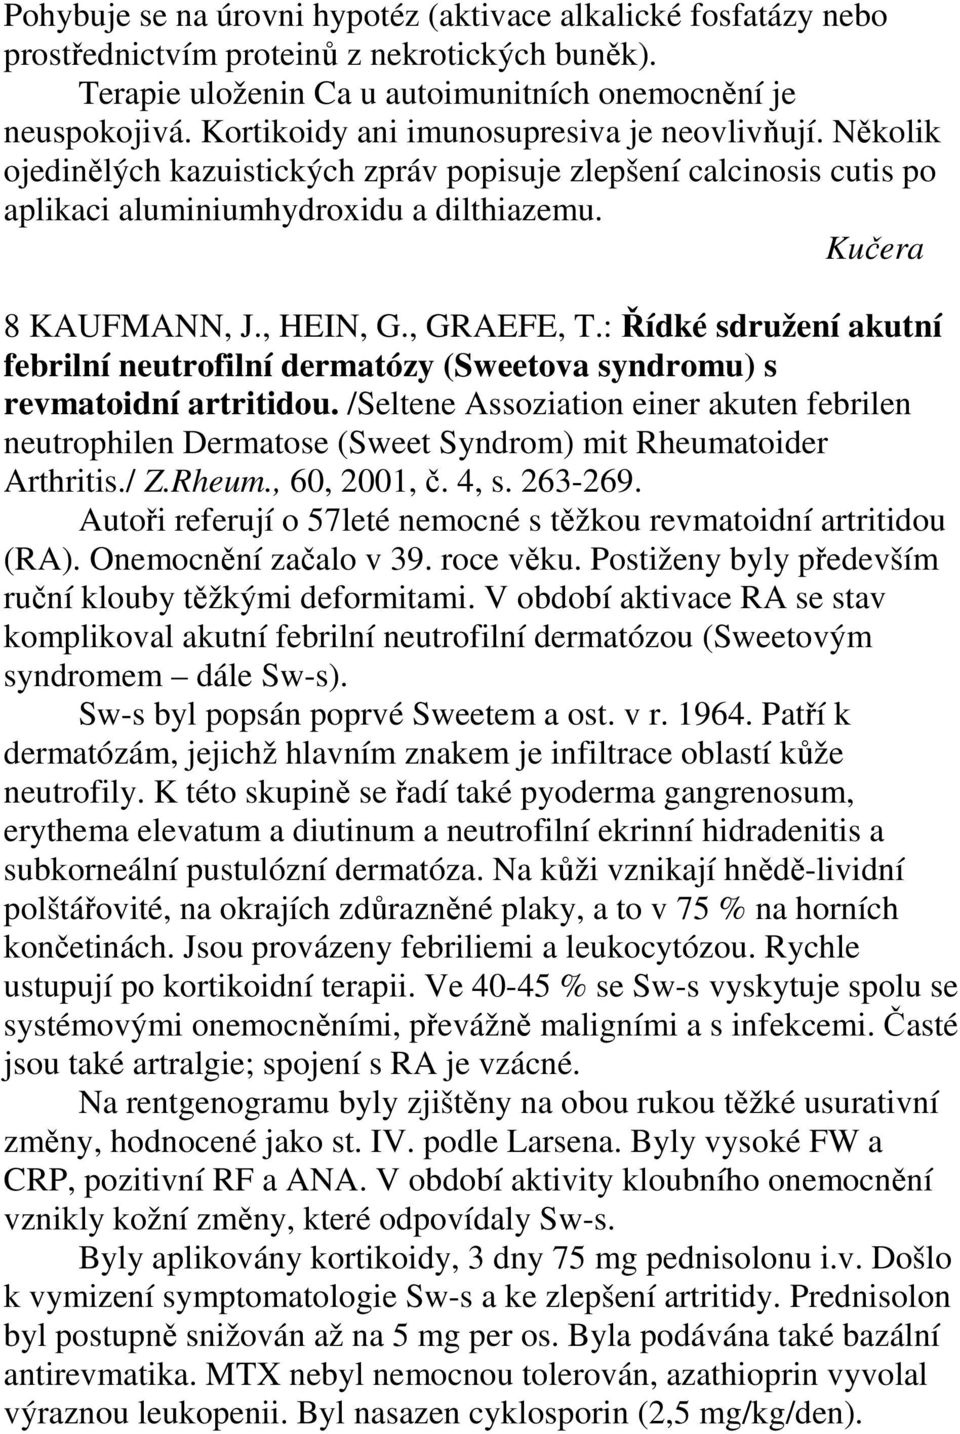 , GRAEFE, T.: Řídké sdružení akutní febrilní neutrofilní dermatózy (Sweetova syndromu) s revmatoidní artritidou.